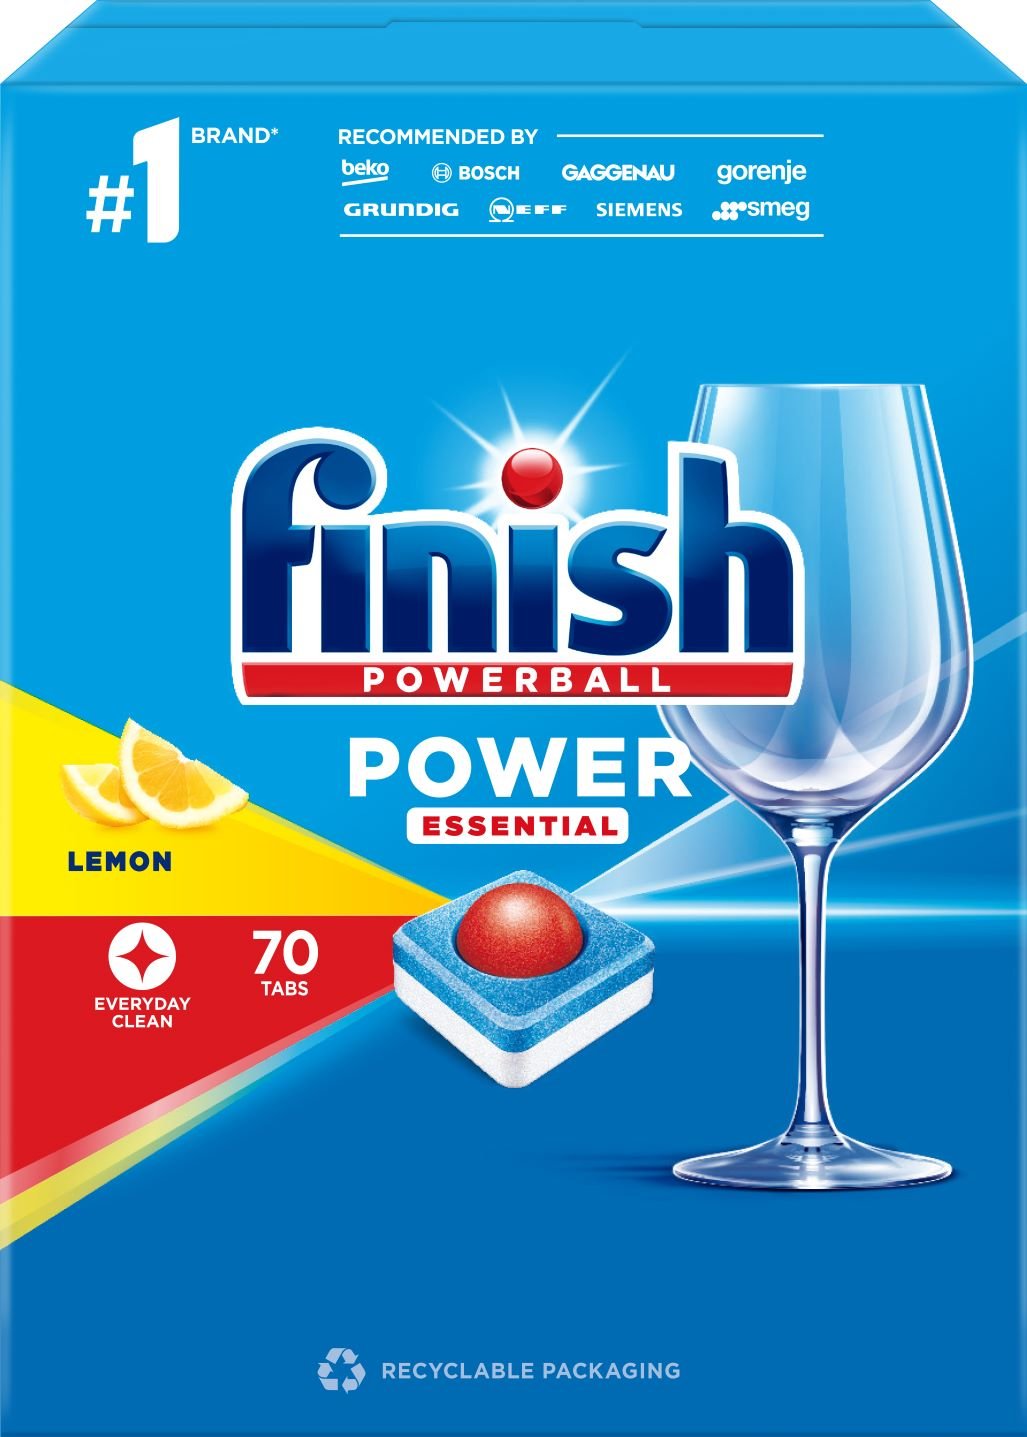 Indaplovių tabletės FINISH Powerball Power Essential, 70 vnt.